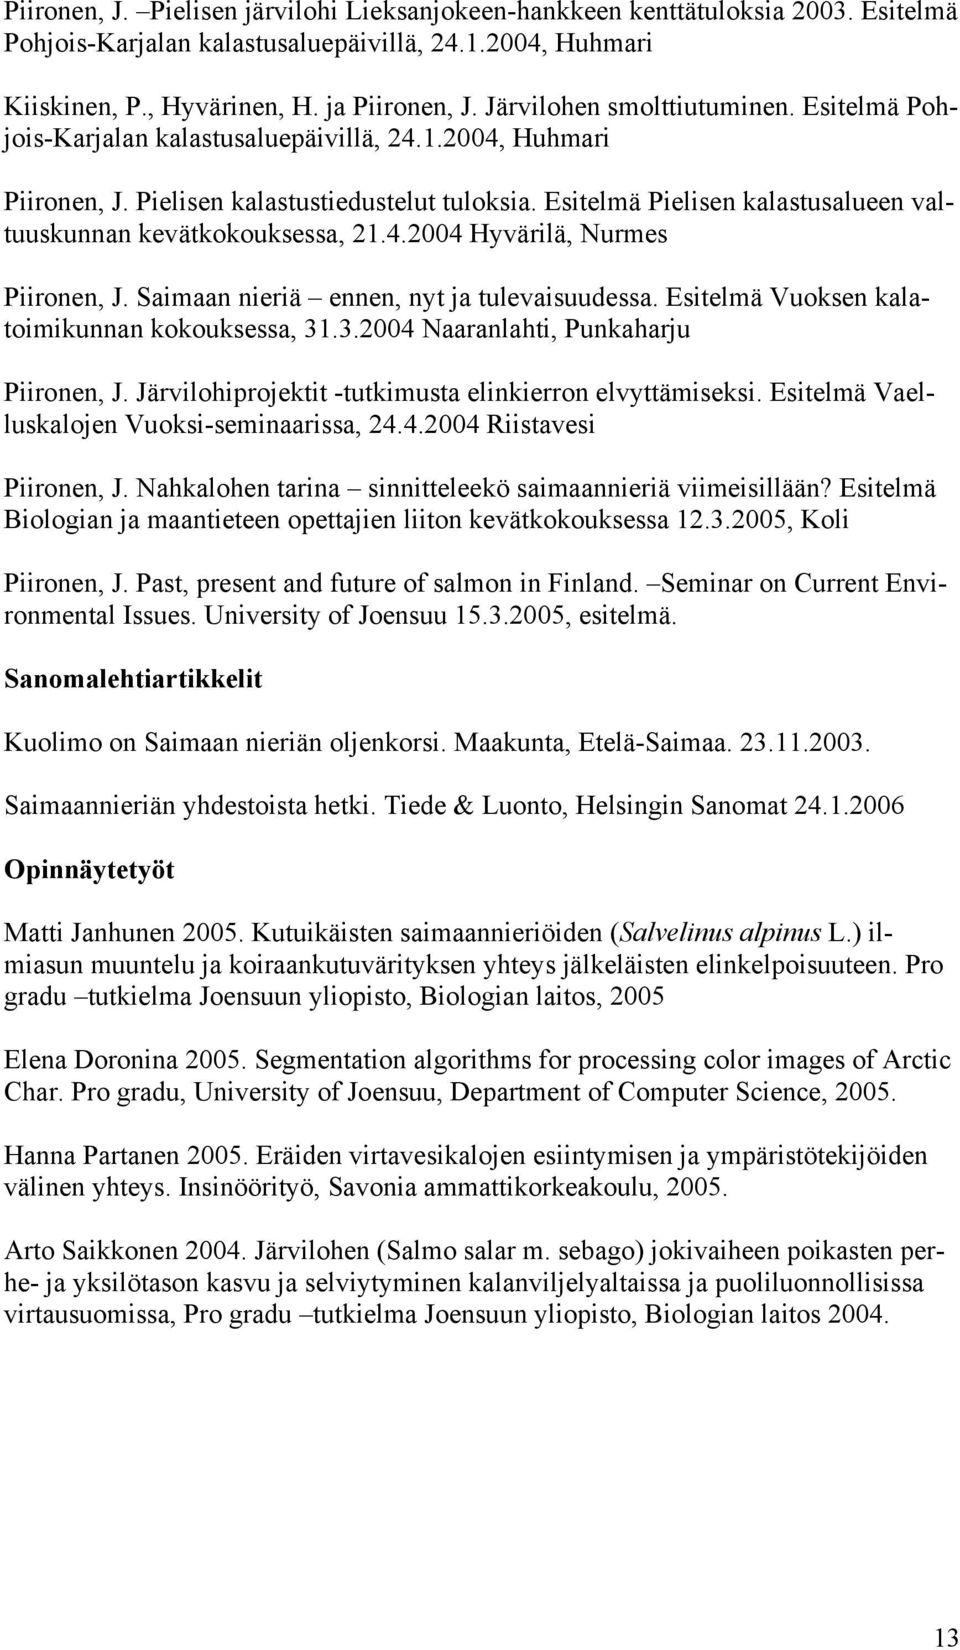 Esitelmä Pielisen kalastusalueen valtuuskunnan kevätkokouksessa, 21.4.2004 Hyvärilä, Nurmes Piironen, J. Saimaan nieriä ennen, nyt ja tulevaisuudessa. Esitelmä Vuoksen kalatoimikunnan kokouksessa, 31.